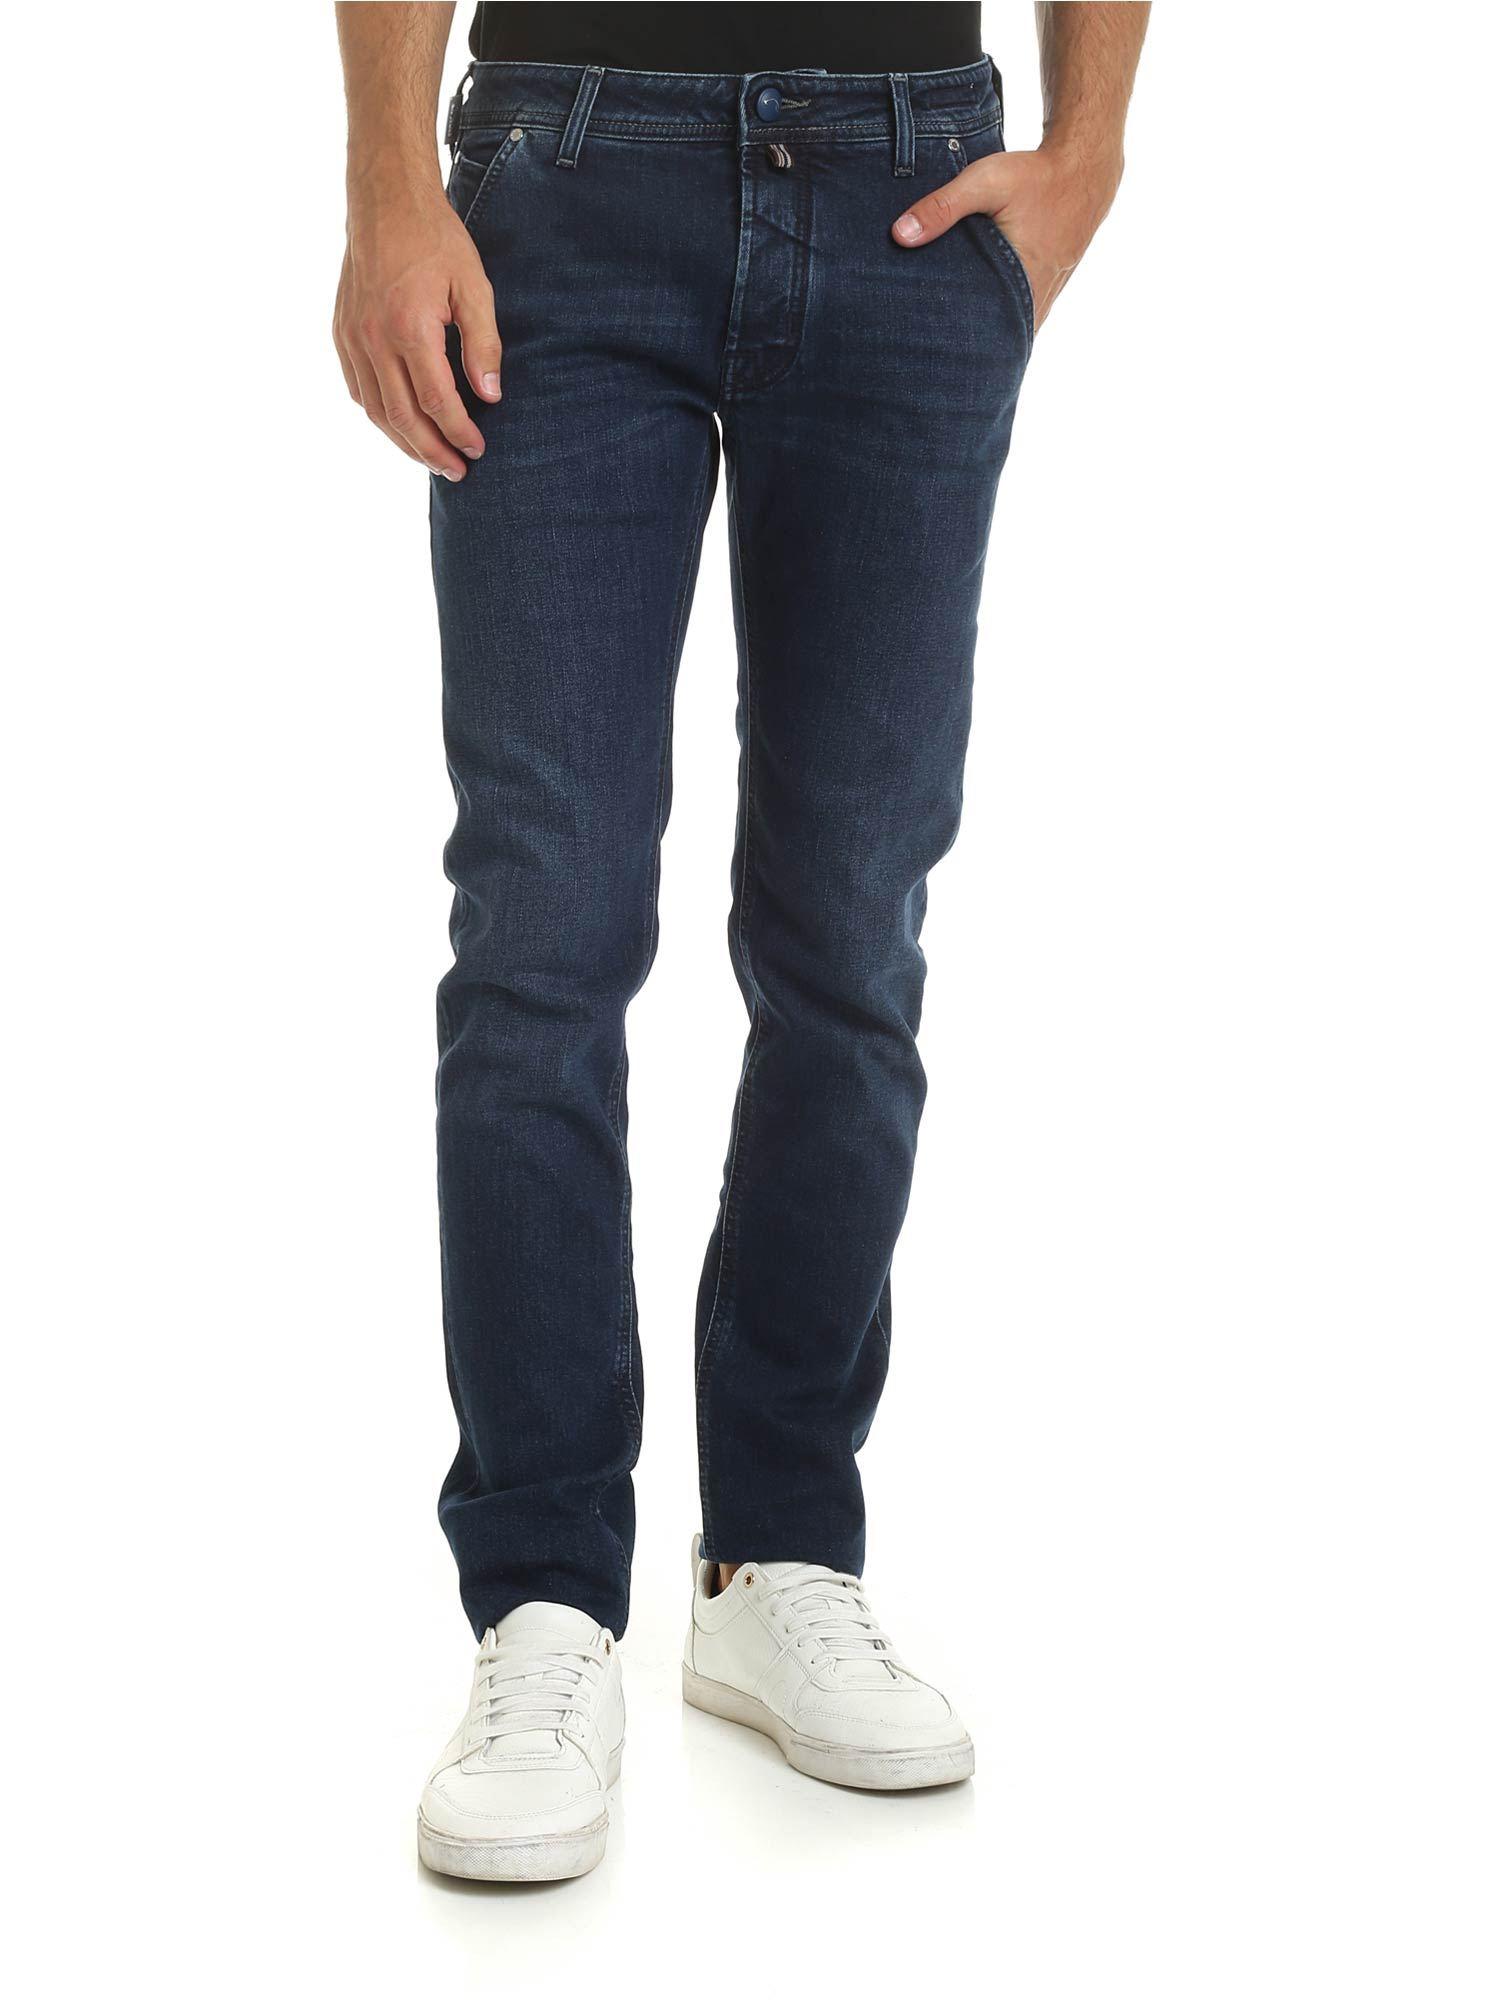 Jacob Cohen Denim Side Slash Pockets Jeans In Blue for Men - Lyst